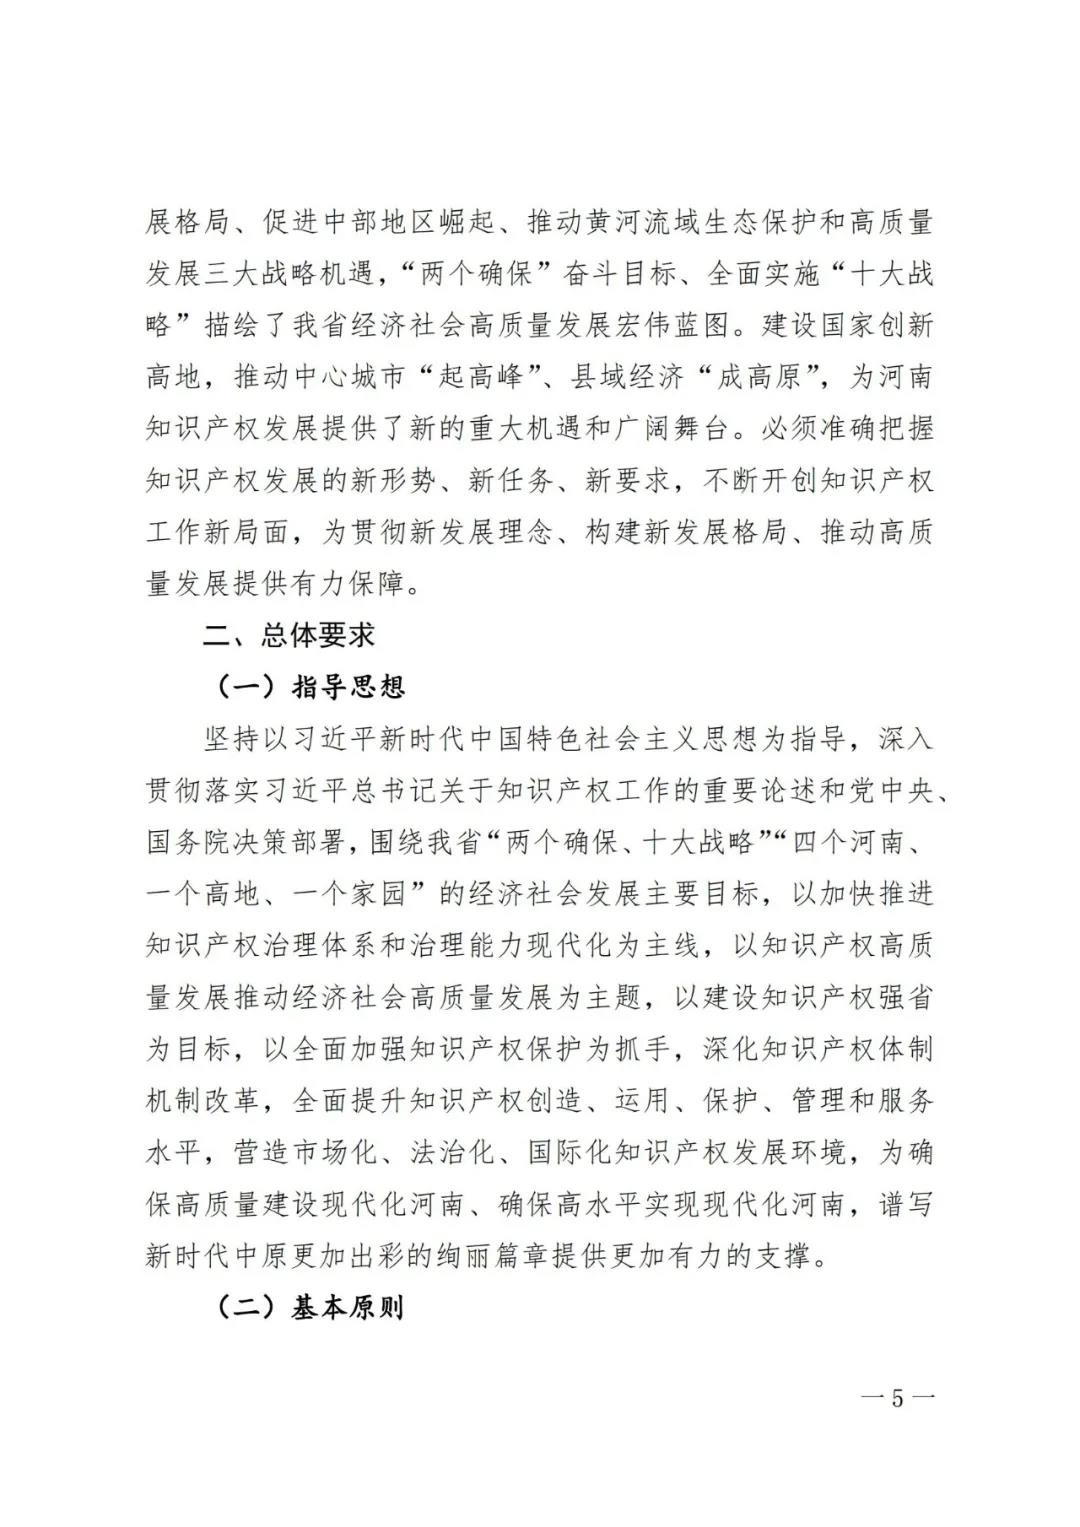 《河南省知识产权创造保护运用 “十四五”规划》全文发布！